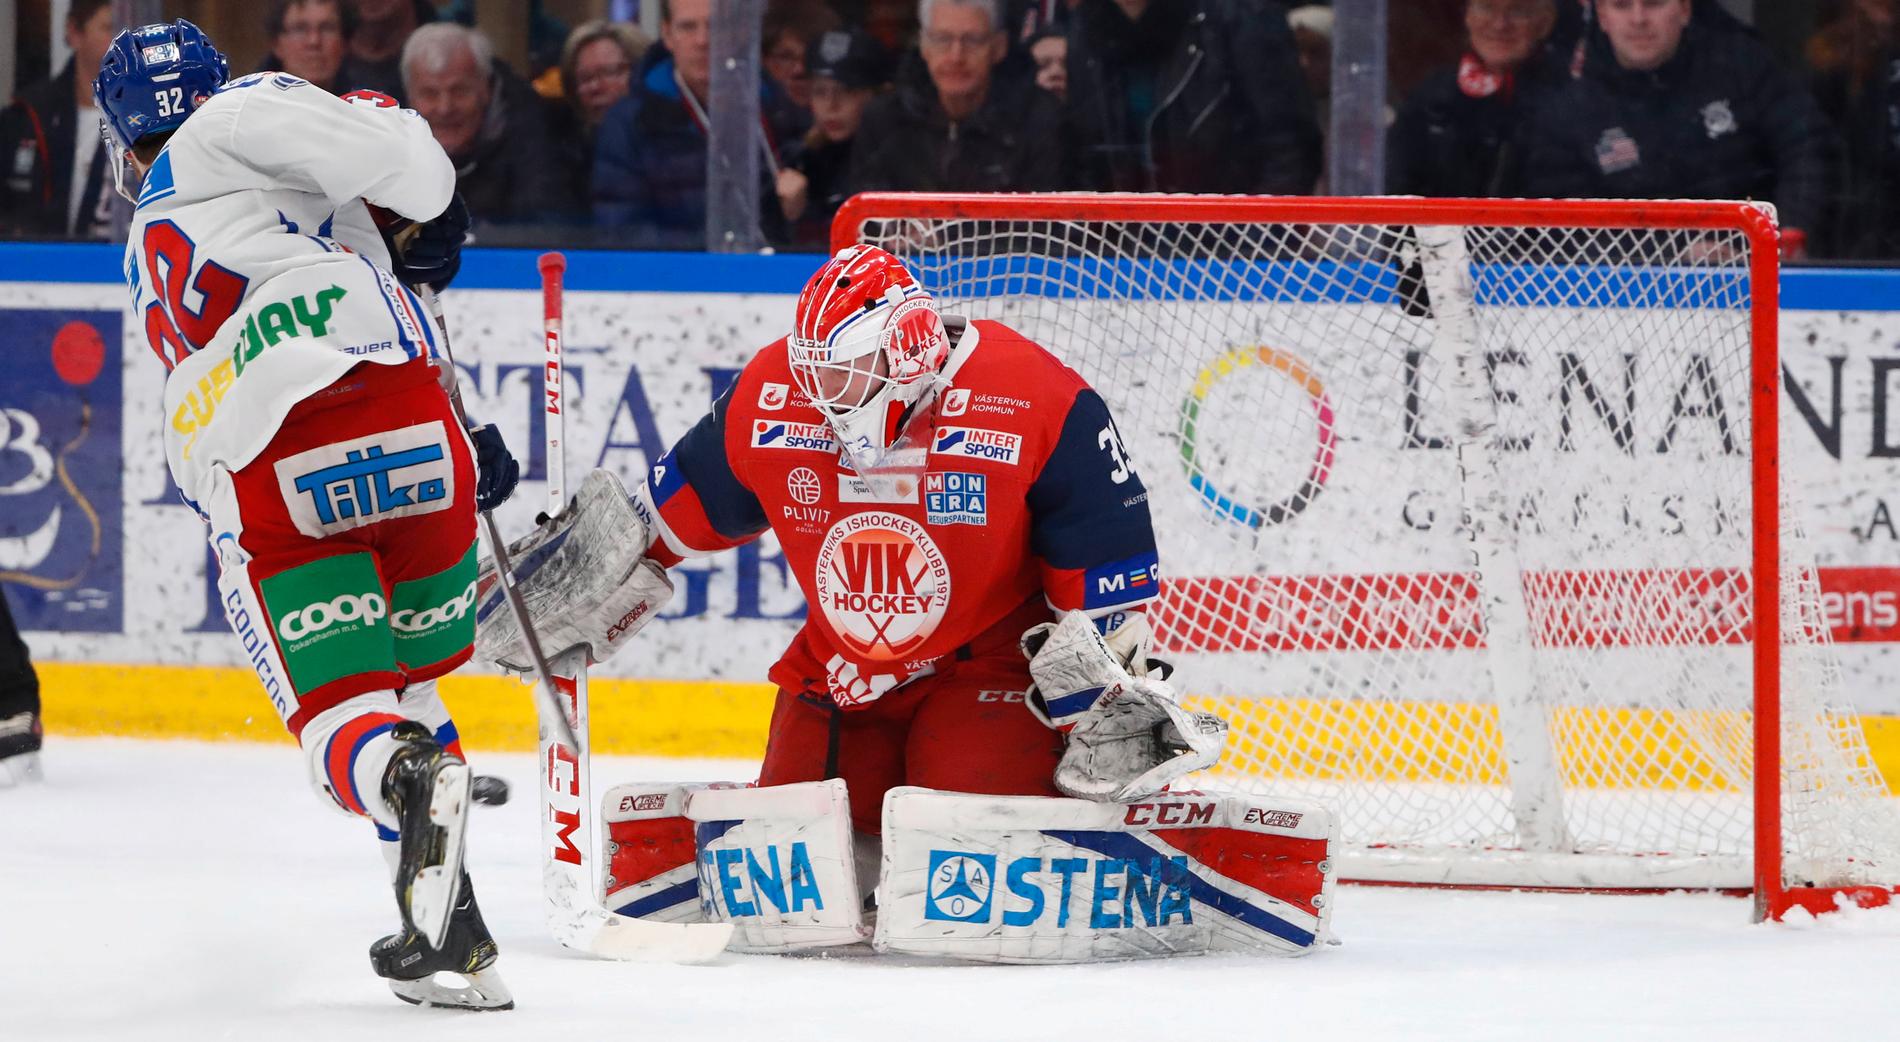 Västerviks målvakt Emil Kruse rädddar en straff från Oskarshamns Markus Modigs under ishockeymatch 27 februari i år i Hockeyallsvenskan mellan Västerviks IK och IK Oskarshamn.